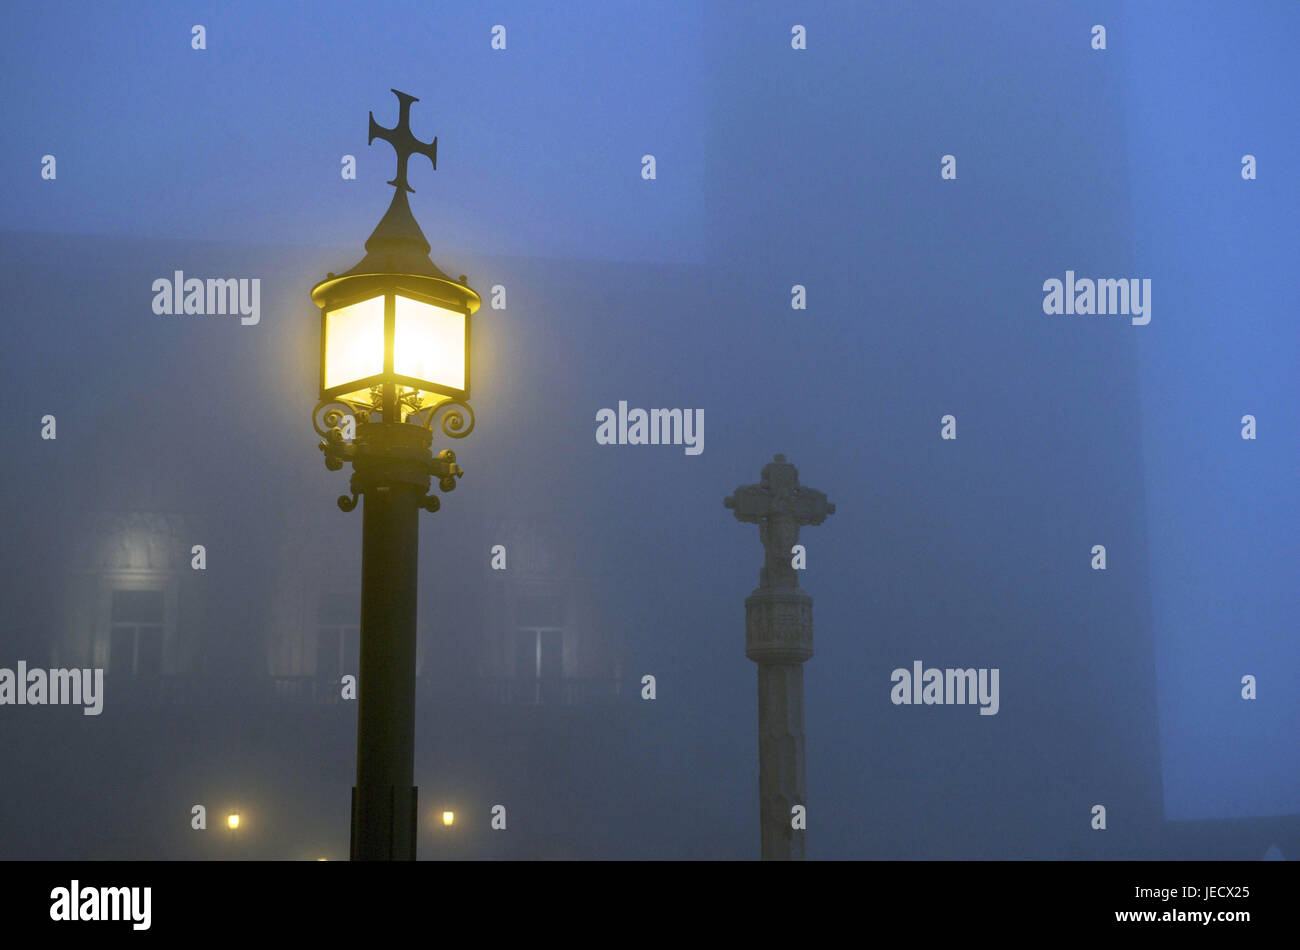 In Spagna, in Catalogna, chiostro di Montserrat, lampade di via nella nebbia, Foto Stock